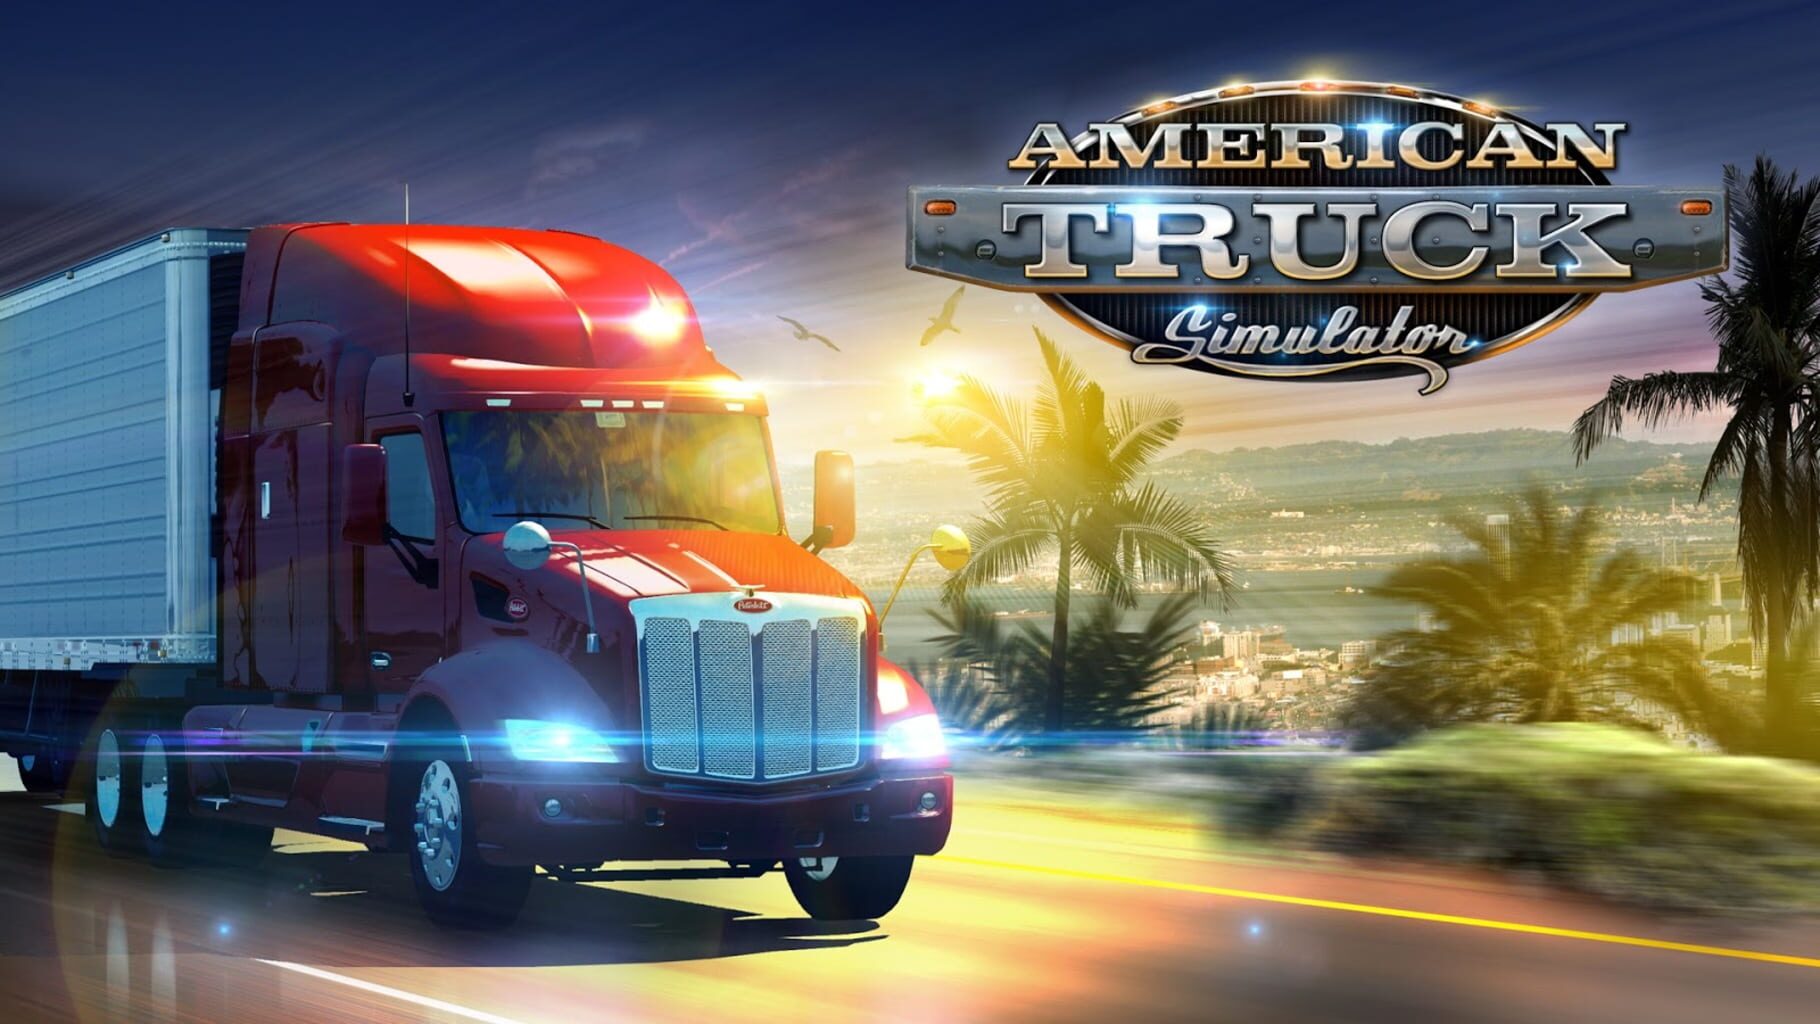 Artwork for American Truck Simulator